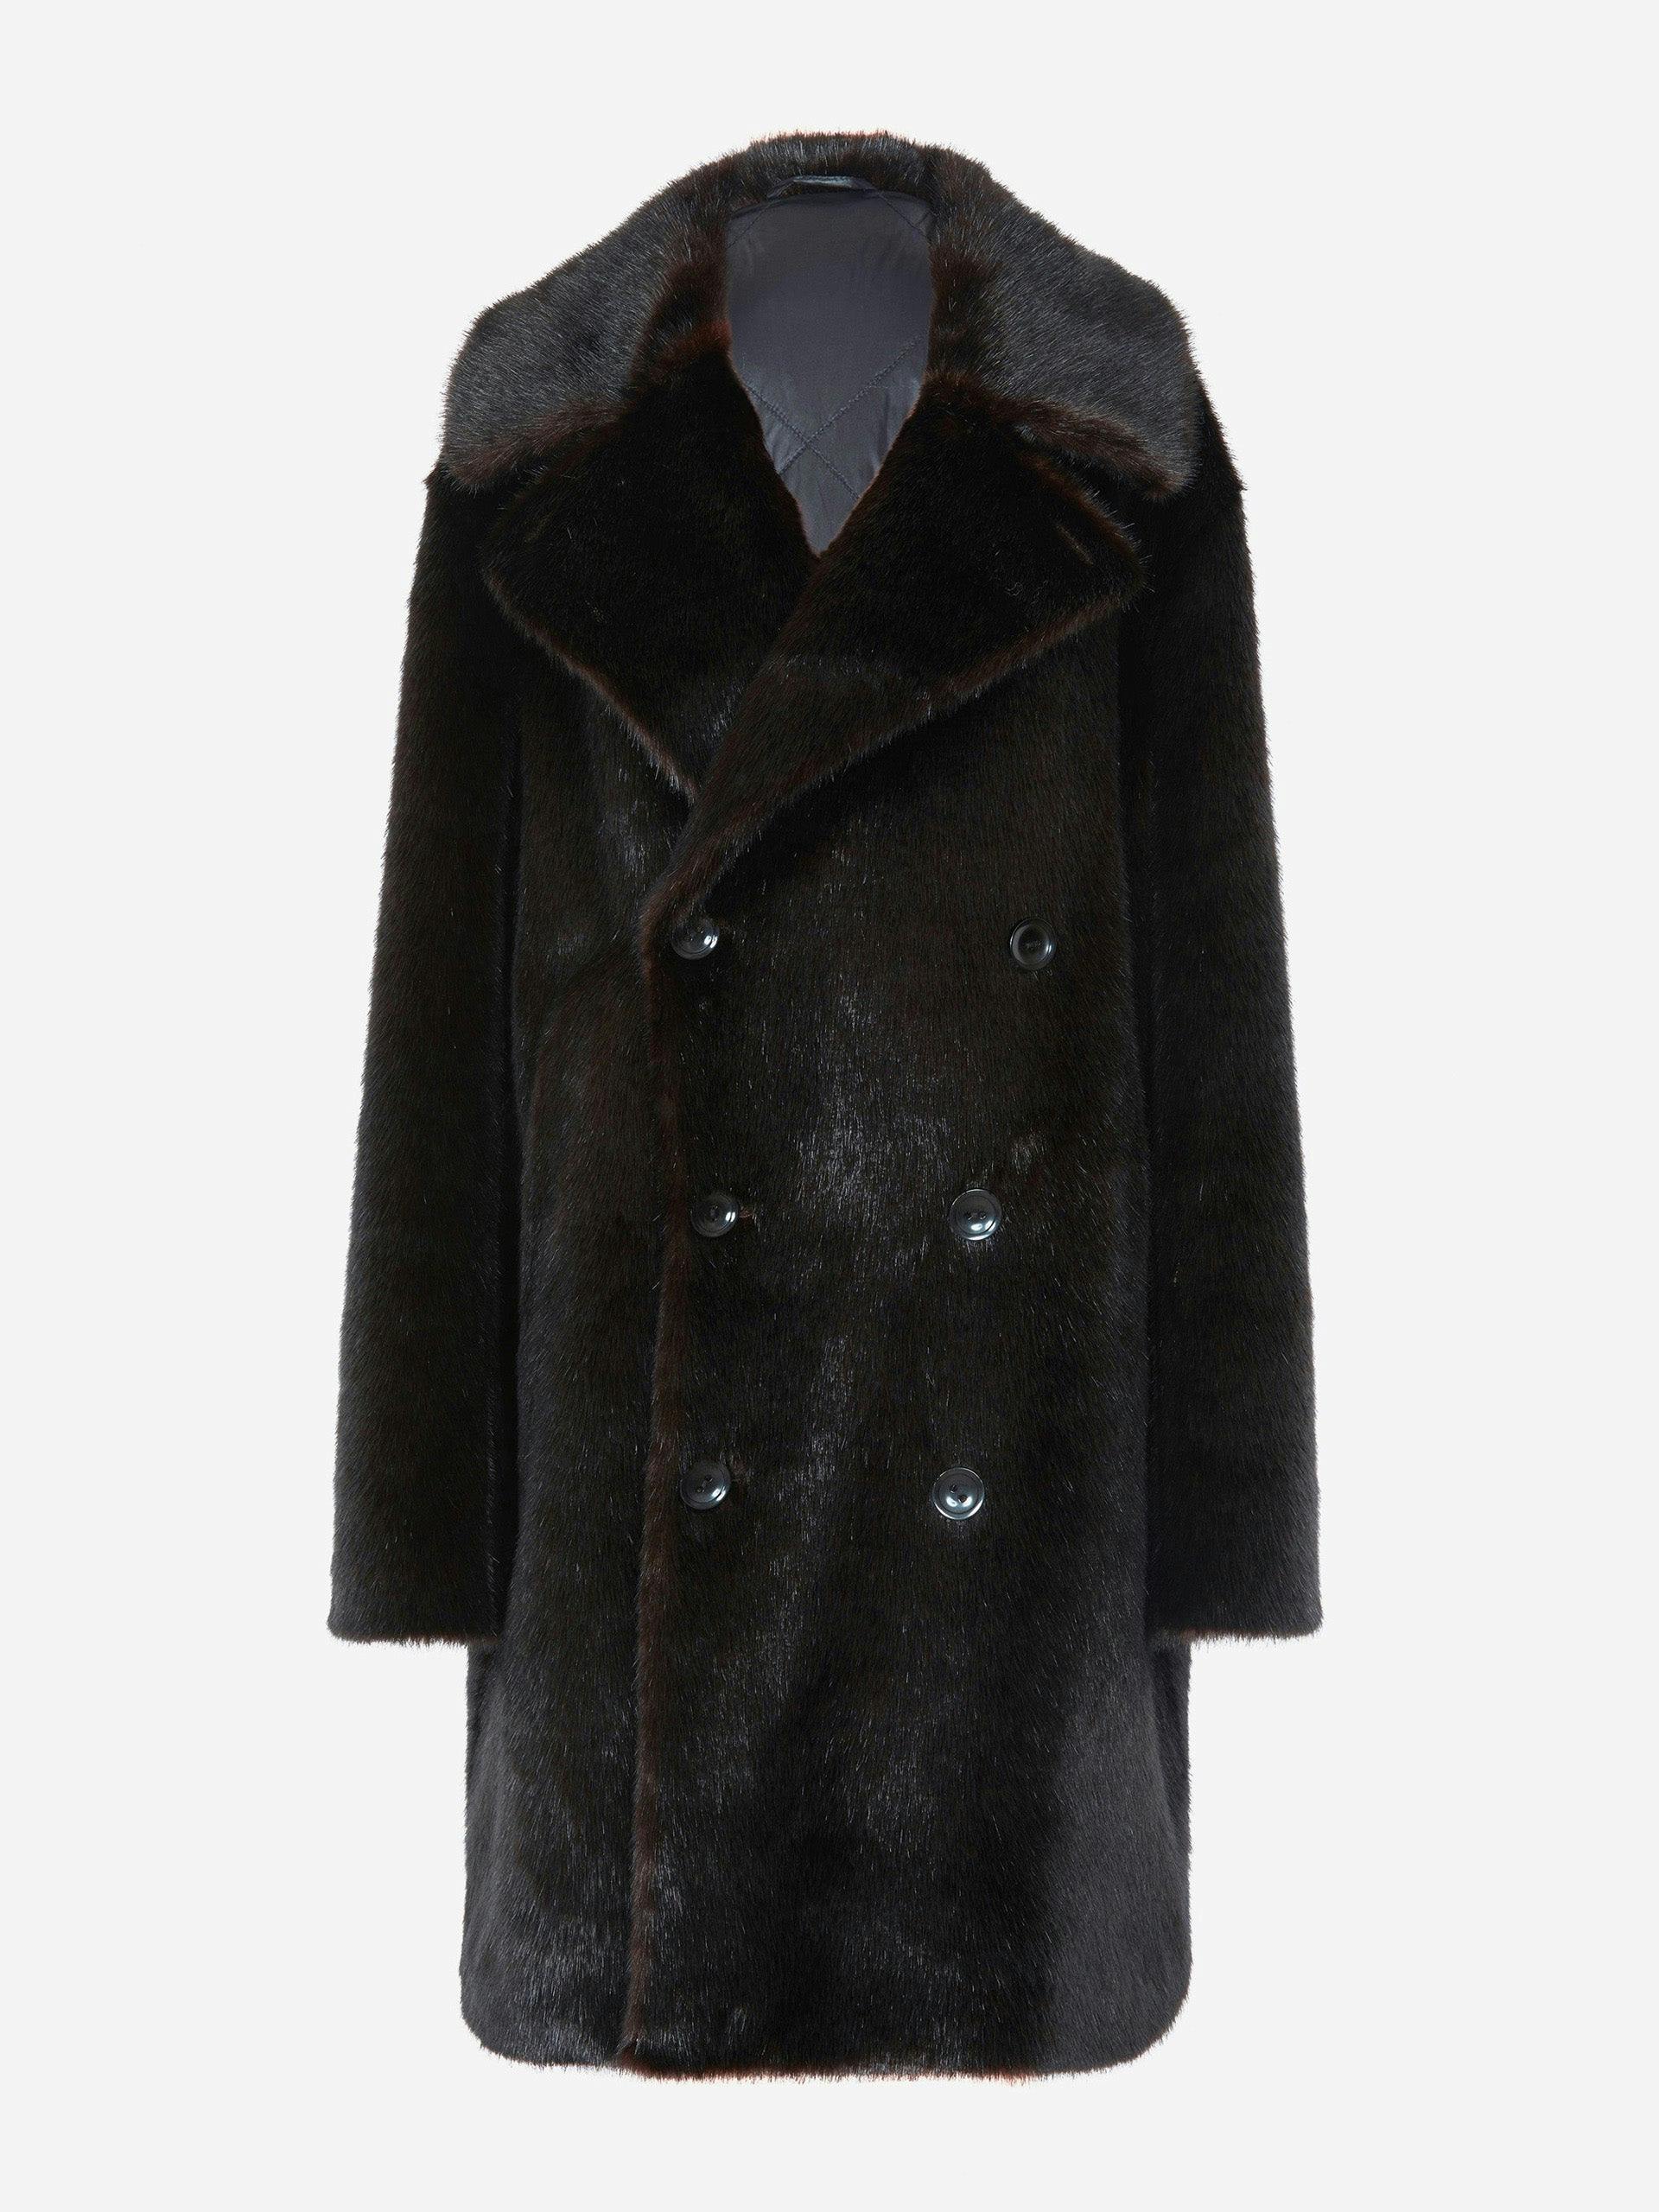 Dark brown faux fur jacket